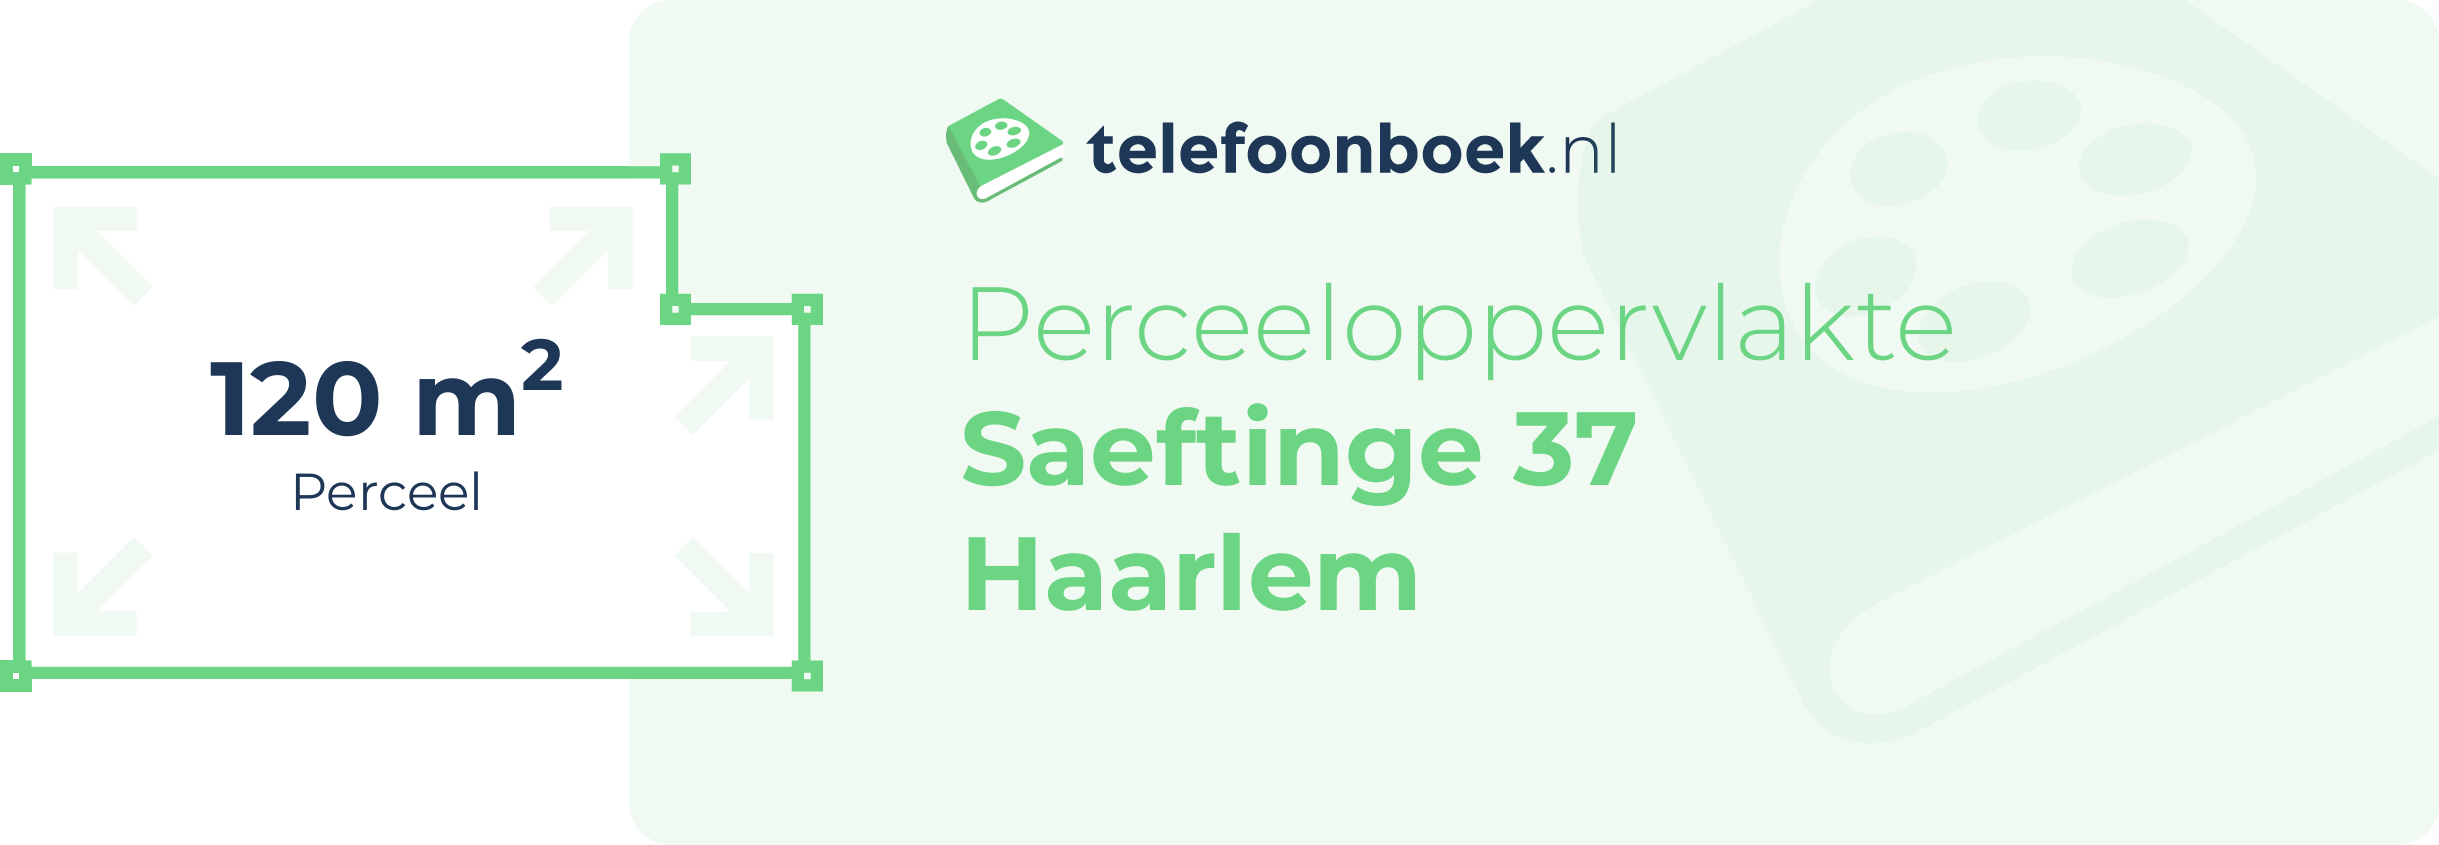 Perceeloppervlakte Saeftinge 37 Haarlem